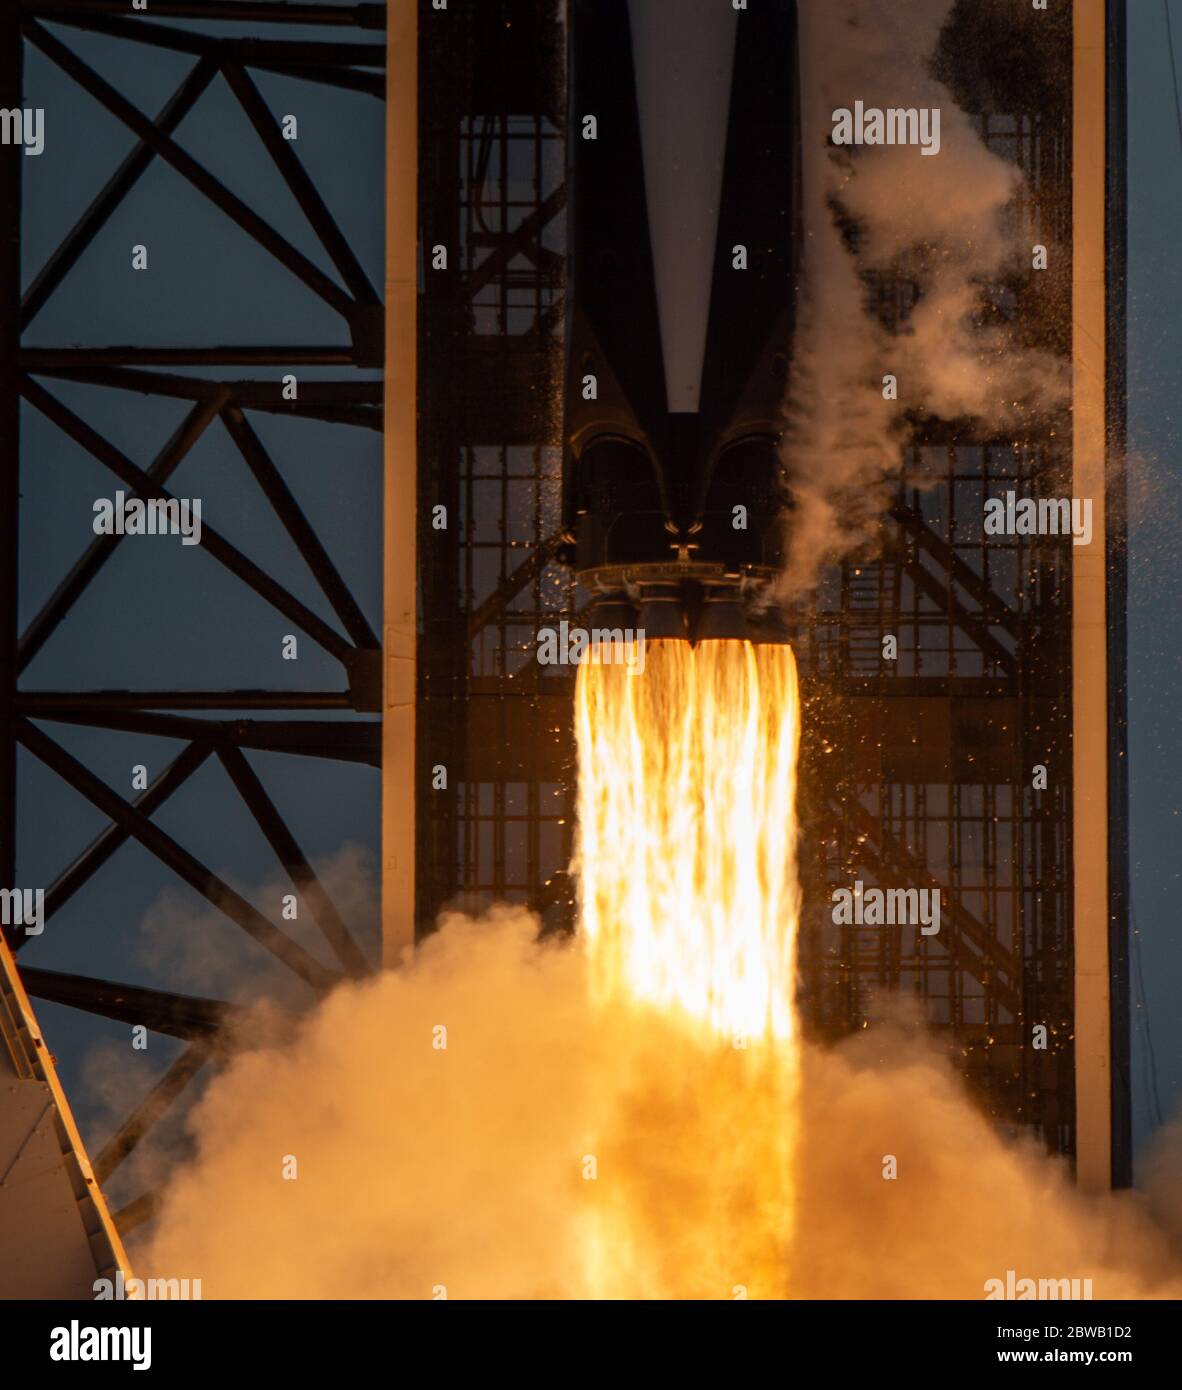 En esta foto lanzada por la Administración Nacional de Aeronáutica y del espacio (NASA), se lanza un cohete Spacex Falcon 9 que transporta la nave espacial Crew Dragon de la compañía en la misión Spacex Demo-2 de la NASA a la Estación Espacial Internacional con los astronautas de la NASA Robert Behnken y Douglas Hurley a bordo, sábado 30 de mayo de 2020, En el Centro Espacial Kennedy de la NASA en Florida. La misión Demo-2 es el primer lanzamiento con astronautas de la nave espacial Spacex Crew Dragon y el cohete Falcon 9 a la Estación Espacial Internacional como parte del Programa de la tripulación comercial de la agencia. El vuelo de prueba sirve de extremo a extremo Foto de stock